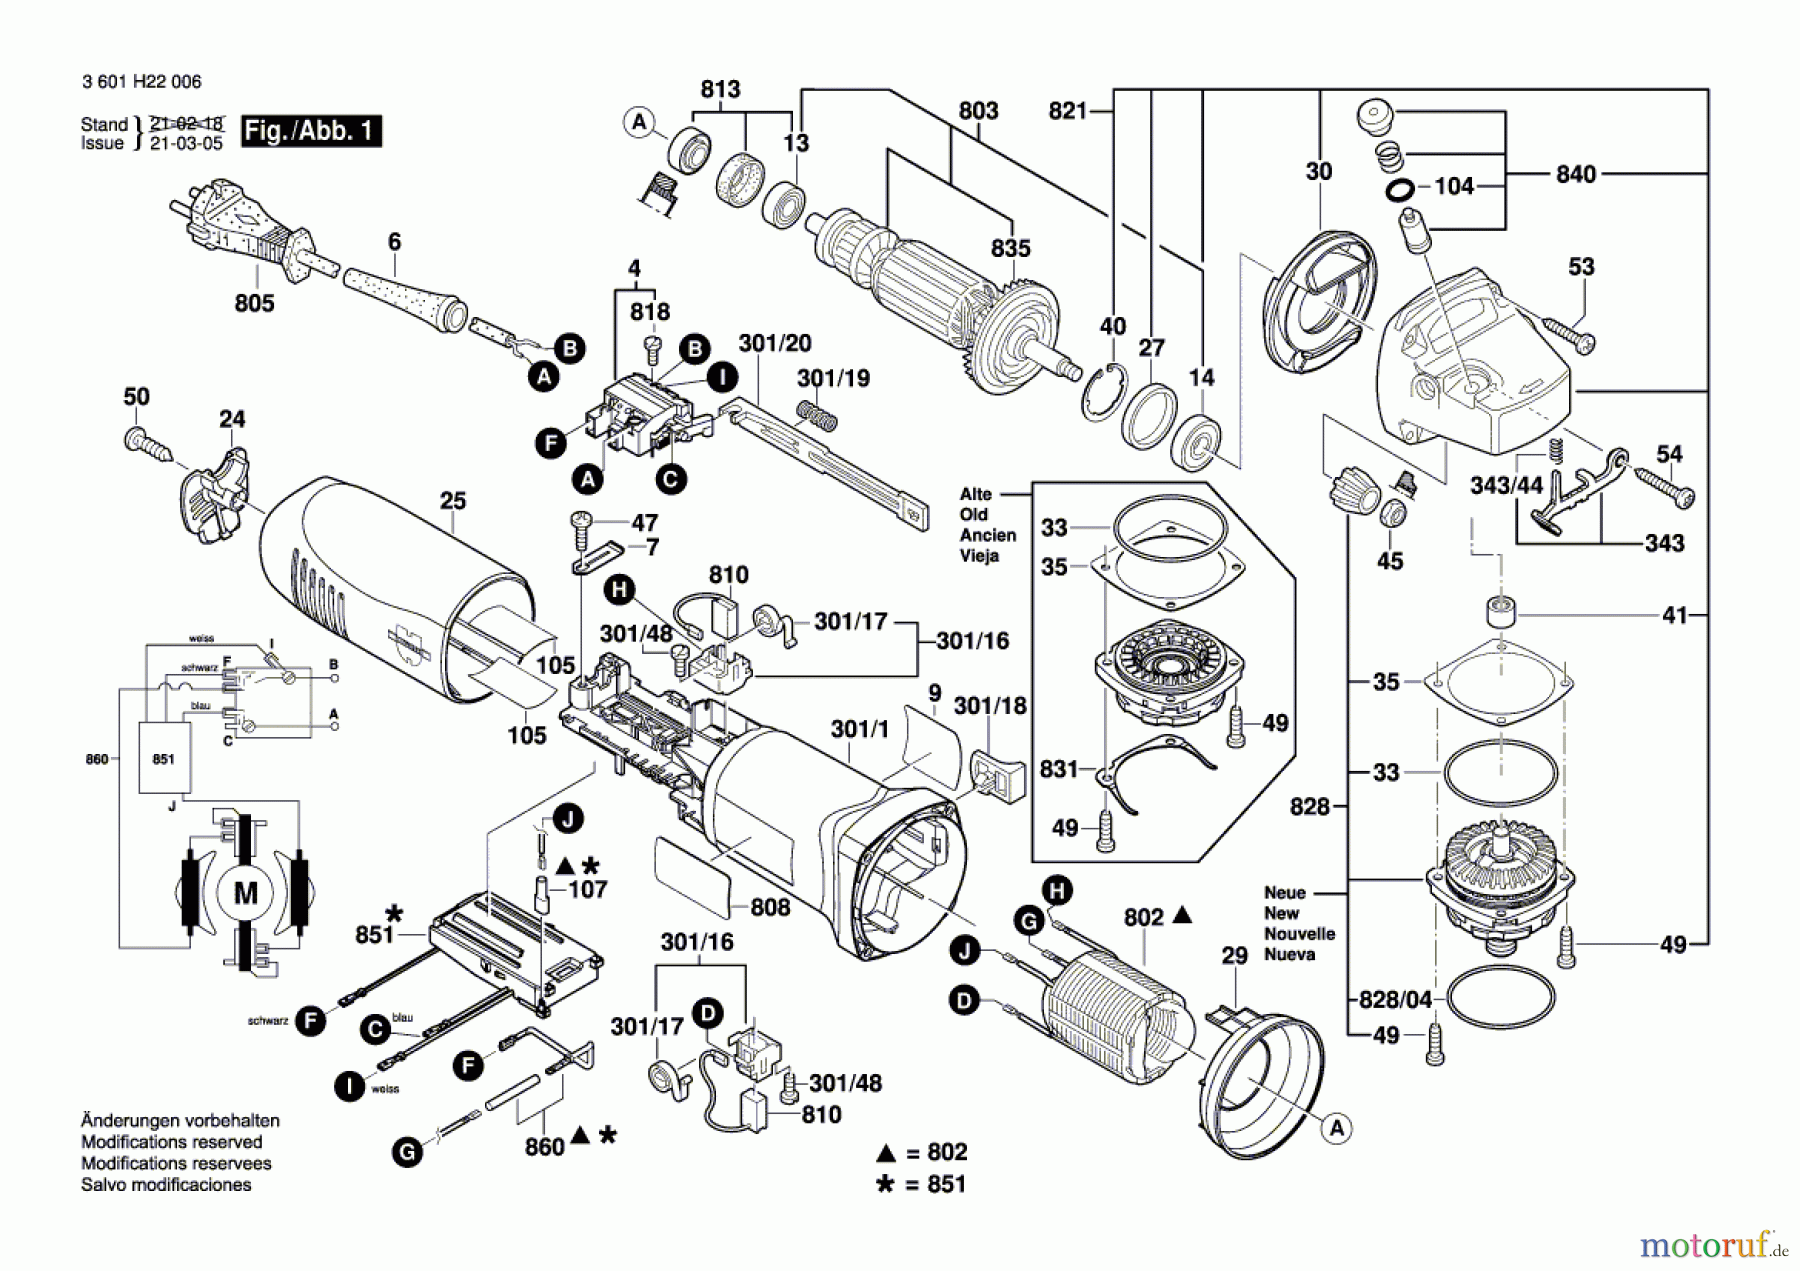  Bosch Werkzeug Winkelschleifer EWS 125 S Seite 1